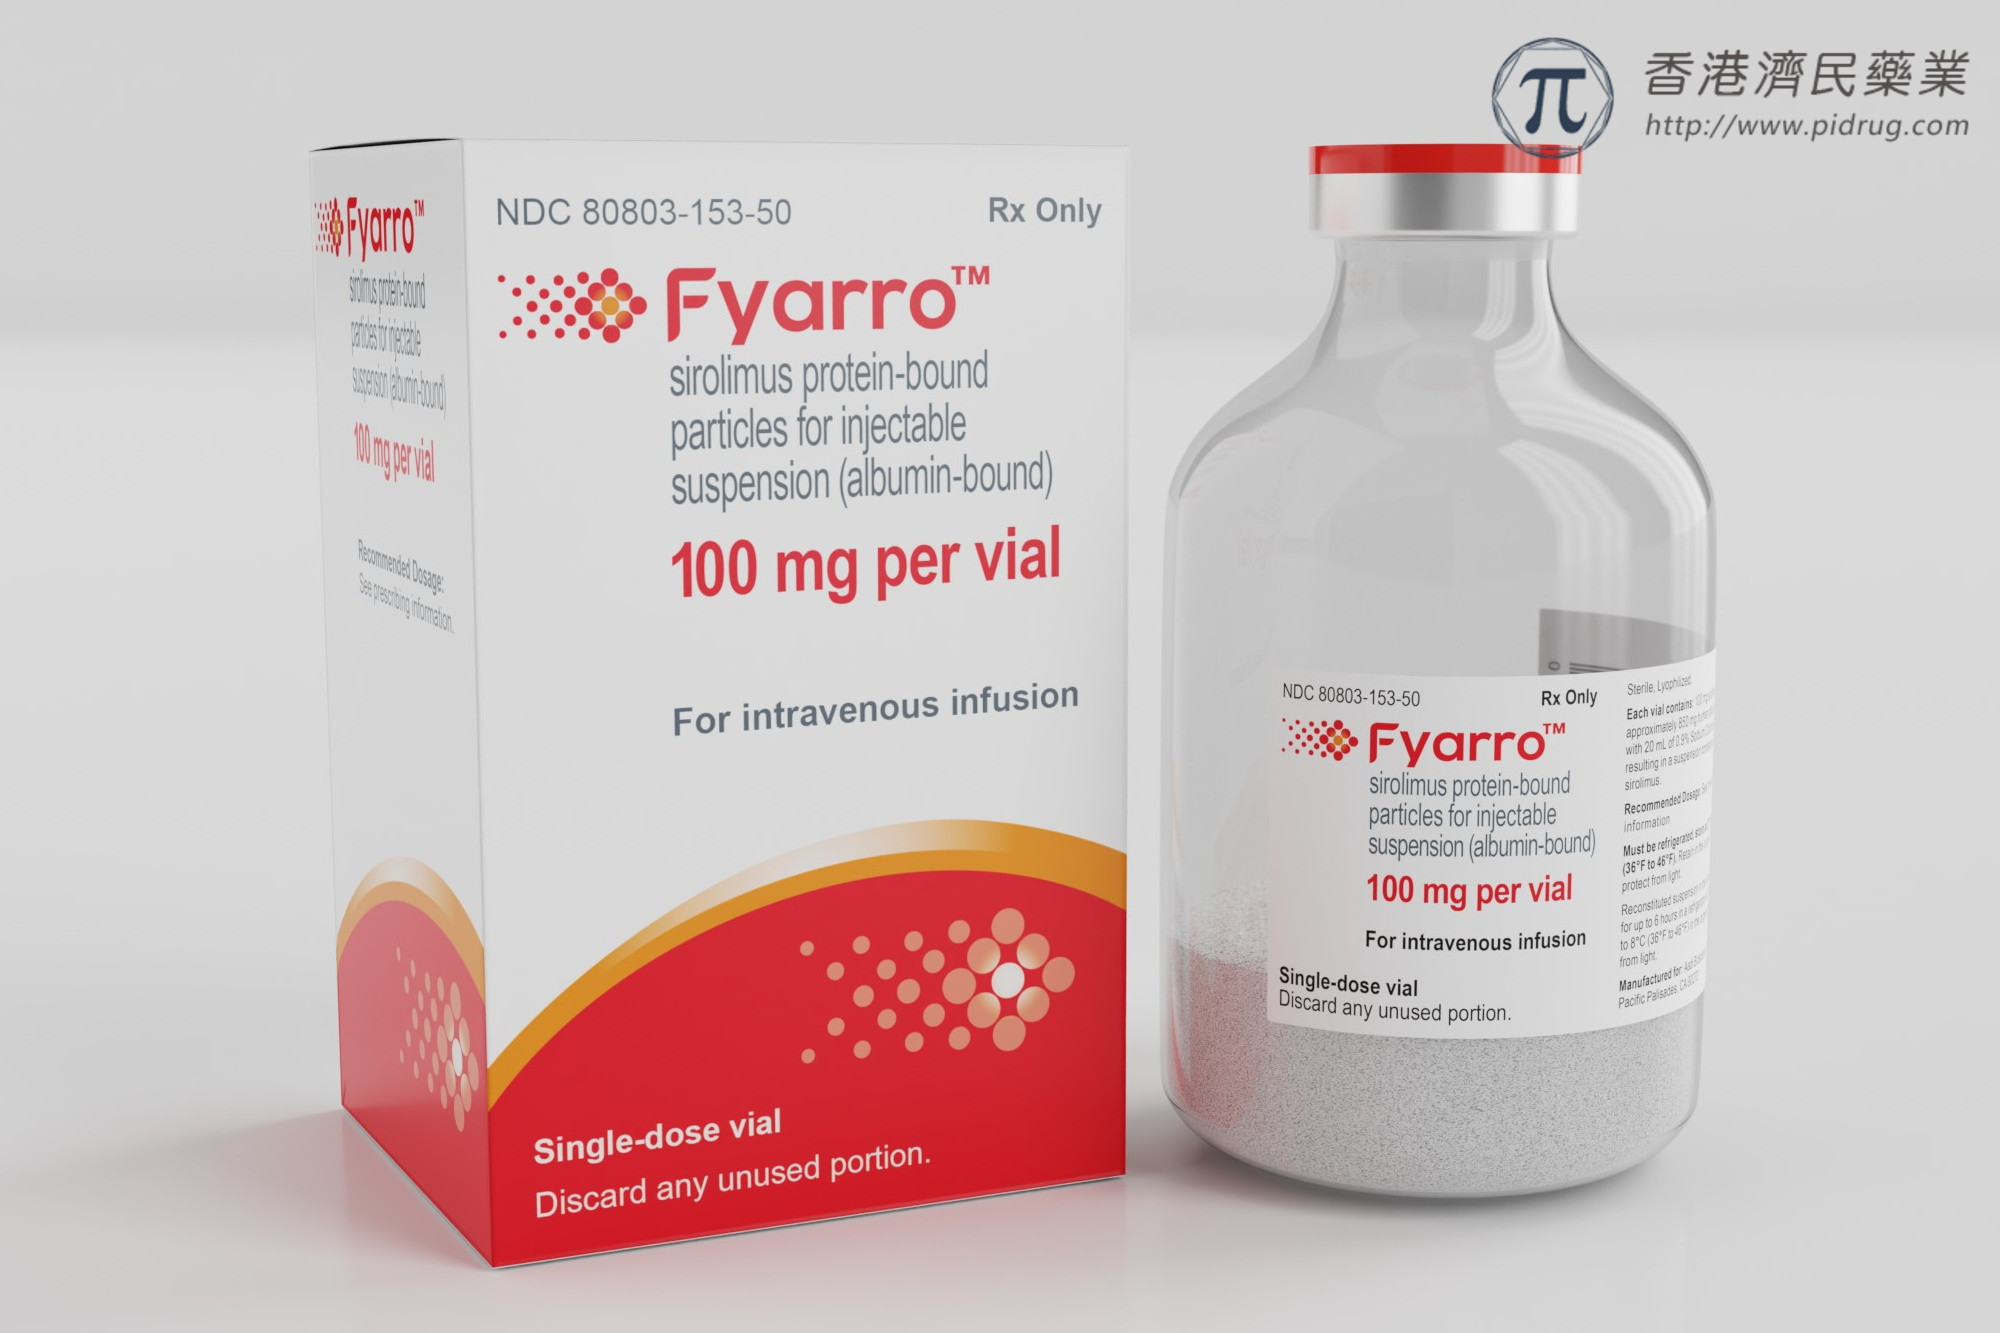 首个且唯一1个获FDA批准的成人晚期罕见肉瘤新药Fyarro（西罗莫司白蛋白结合型纳米颗粒）_香港济民药业